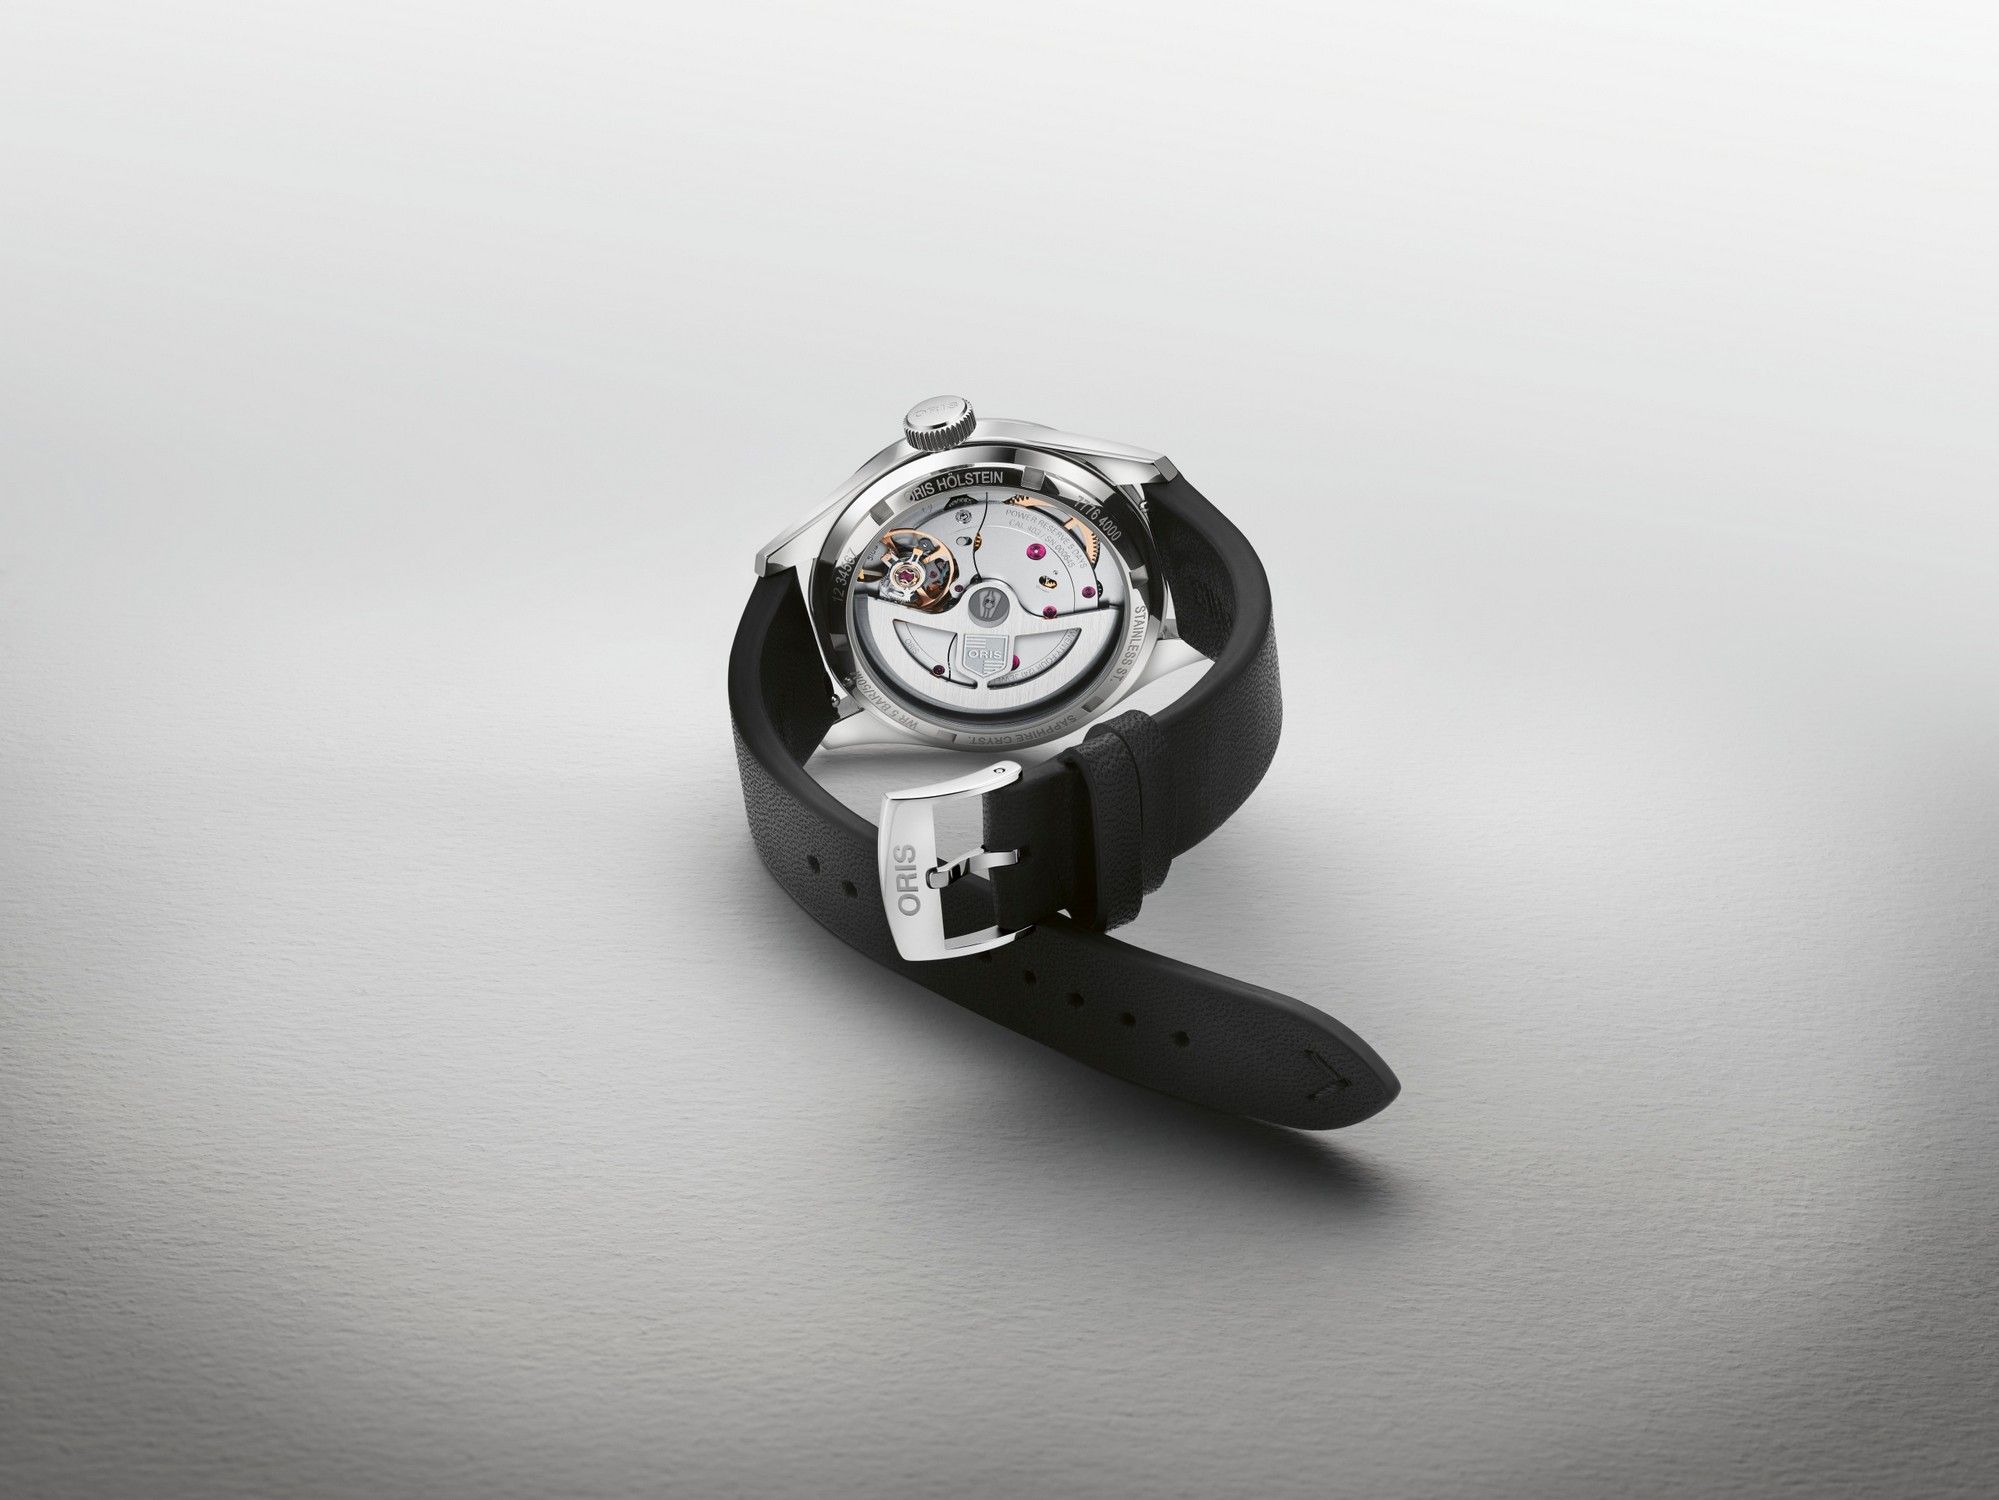 ORIS BIG CROWN Мужские швейцарские часы, автоматический механизм, сталь, 38 мм